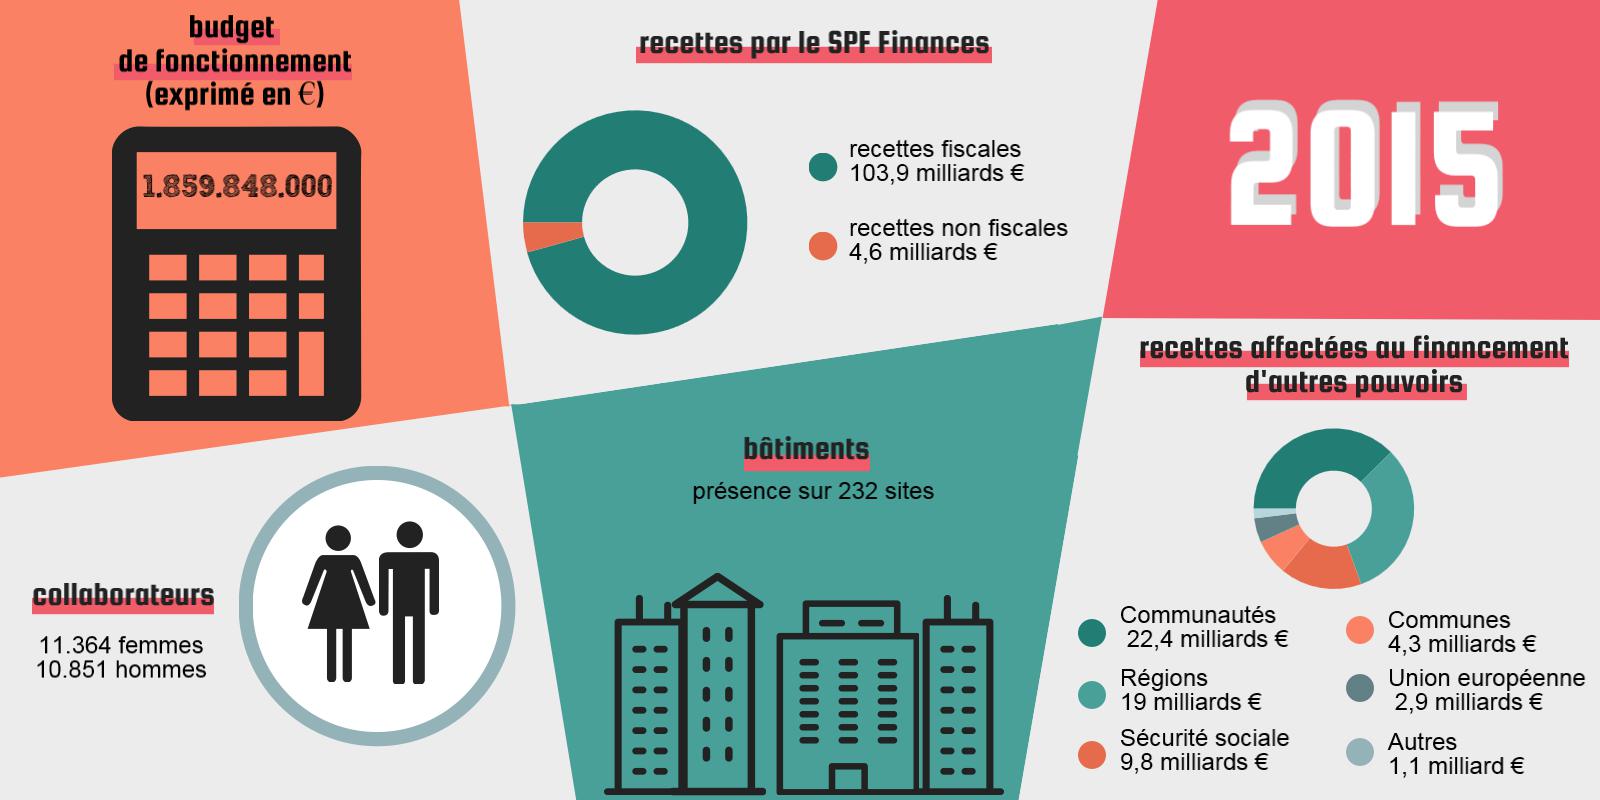 2015 | budget de fonctionnement (exprimé en €) : 1.859.848.000 | recettes fiscales : 103,9 milliards € / recettes non fiscales : 4,6 milliards € | 11.364 femmes / 10.851 hommes | Présence sur 232 sites | recettes affectées au financement d'autres pouvoirs : Communautés : 22,4 milliards € / Régions : 19 milliards € / Sécurité sociale : 9,8 milliards € / Communes : 4,3 milliards € / Union européenne : 2,9 milliards € / Autres : 1,1 milliard €